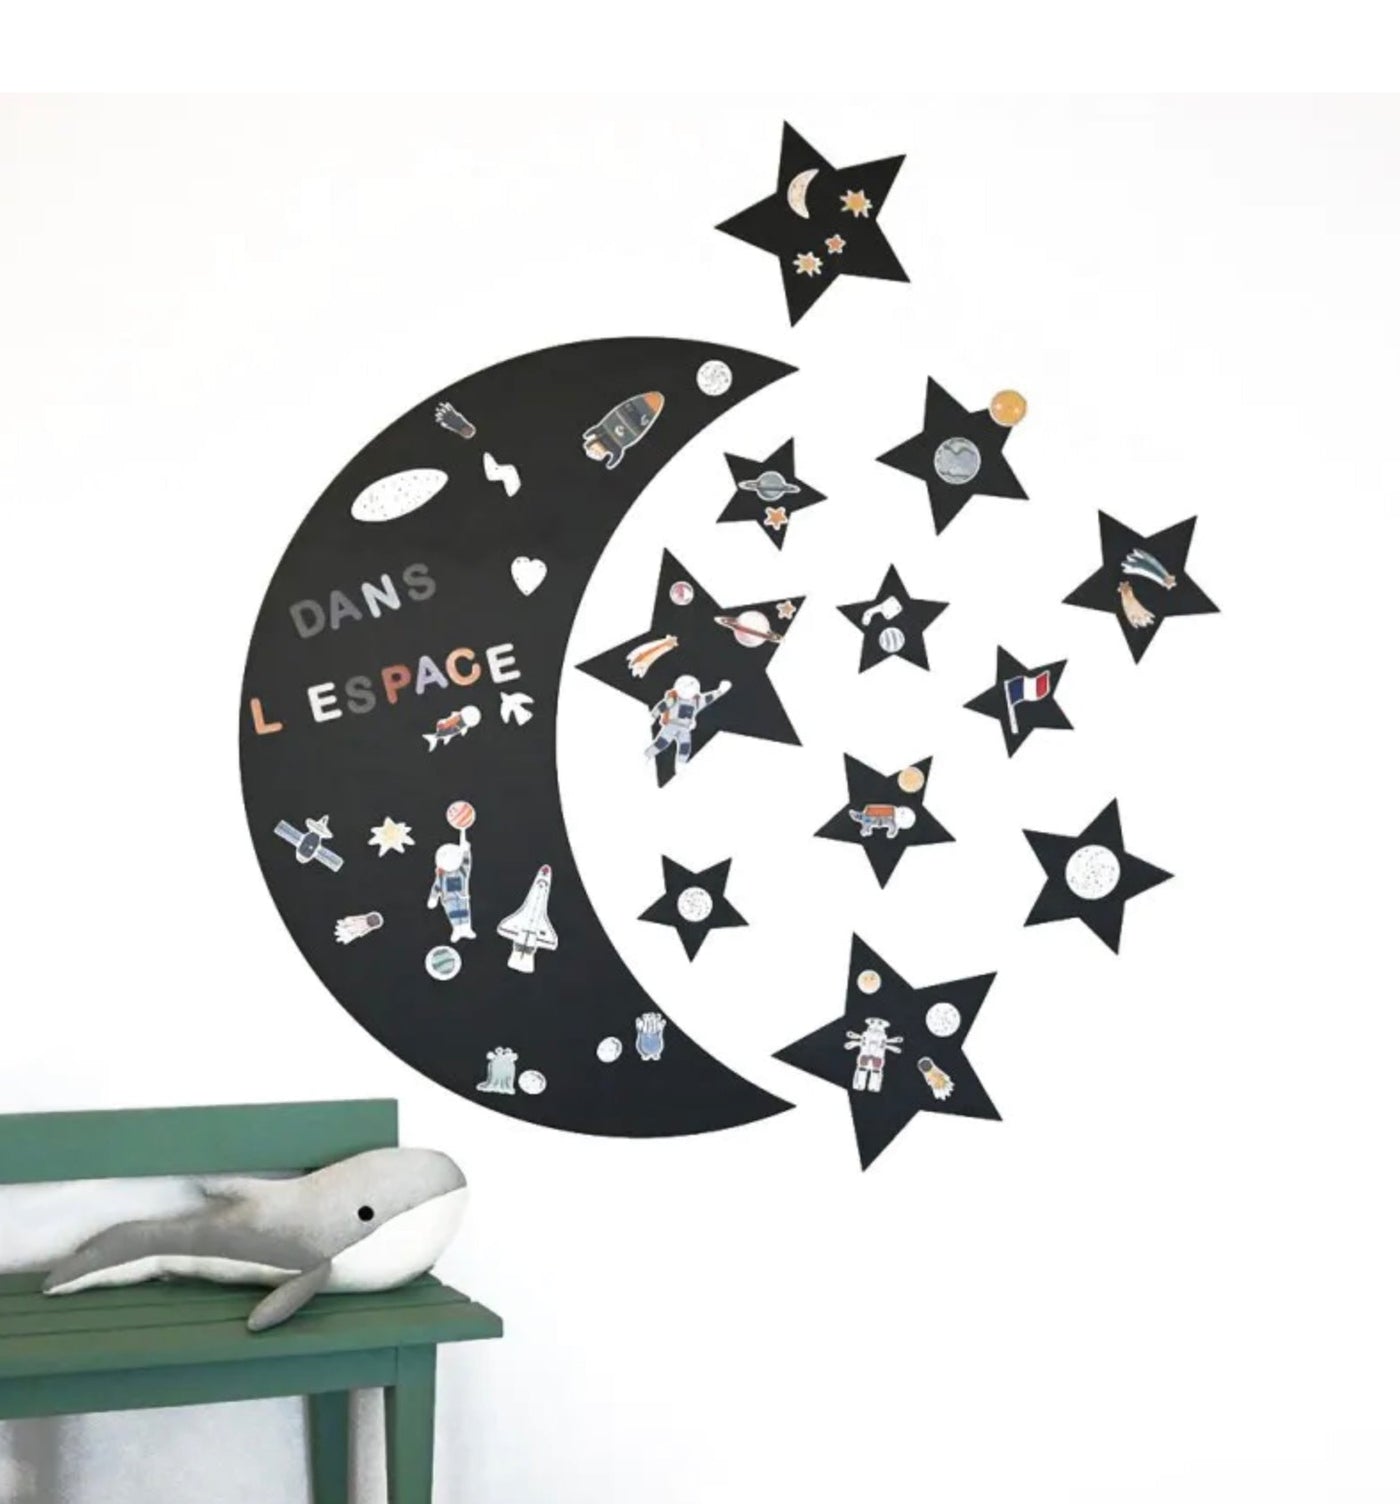 Ferflex Soft-Magnettafel Mond ca. B58xH82,9 cm mit 11 Sternen & 76 Magneten in Schwarz zum auf & abziehen an der Wand - Bitangel RENOVATE & FURNISH HOMES GmbH